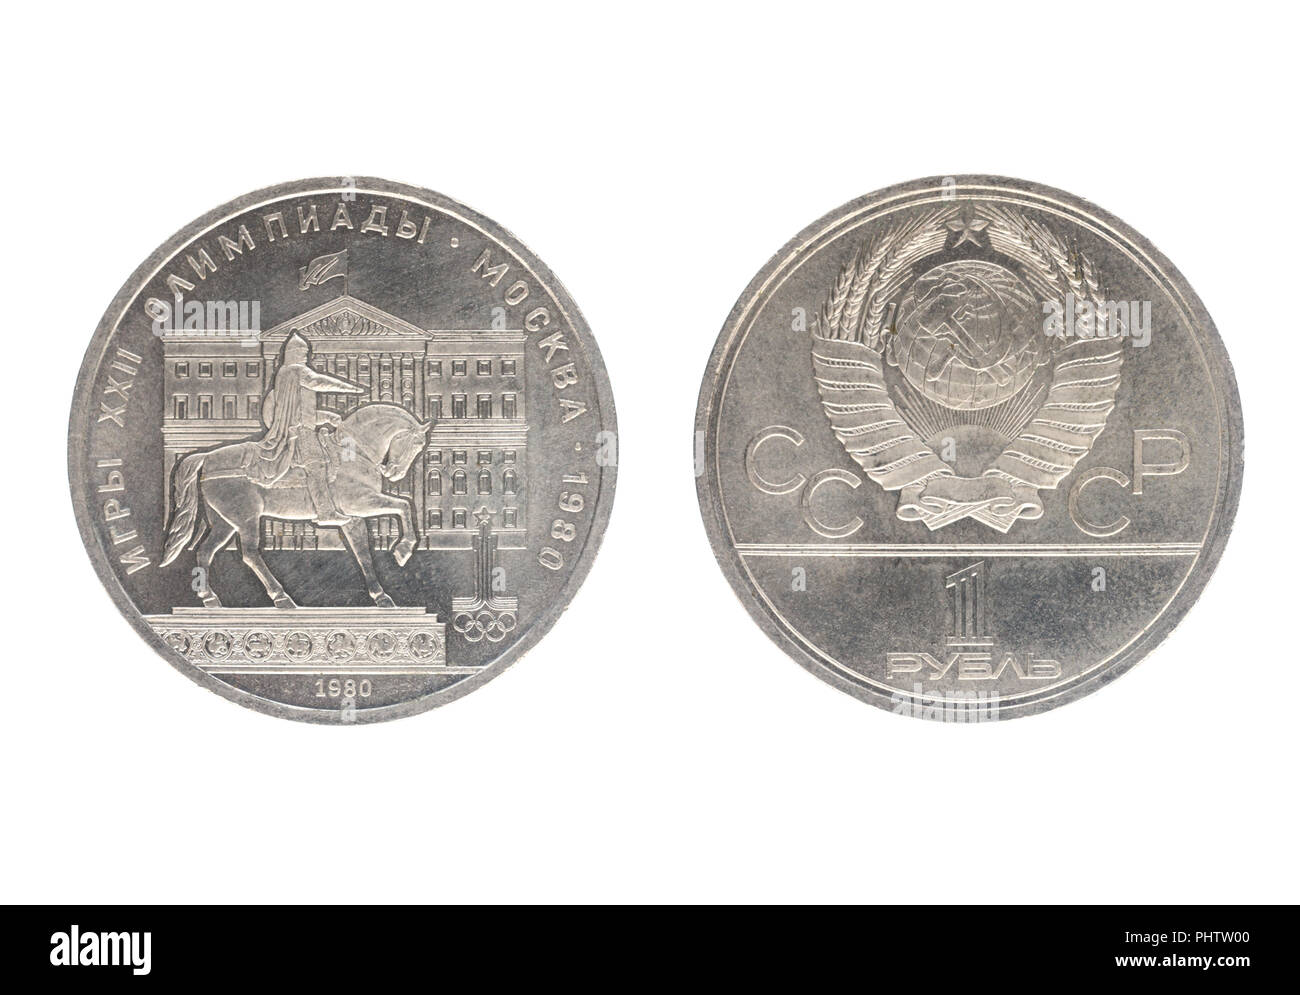 Unione Sovietica - circa 1980: Set di commemorativo per l'URSS moneta nel 1980, del valore nominale di 1 rublo, mostra i giochi della XXII Olimpiade di Mosca. Isolare il whit Foto Stock